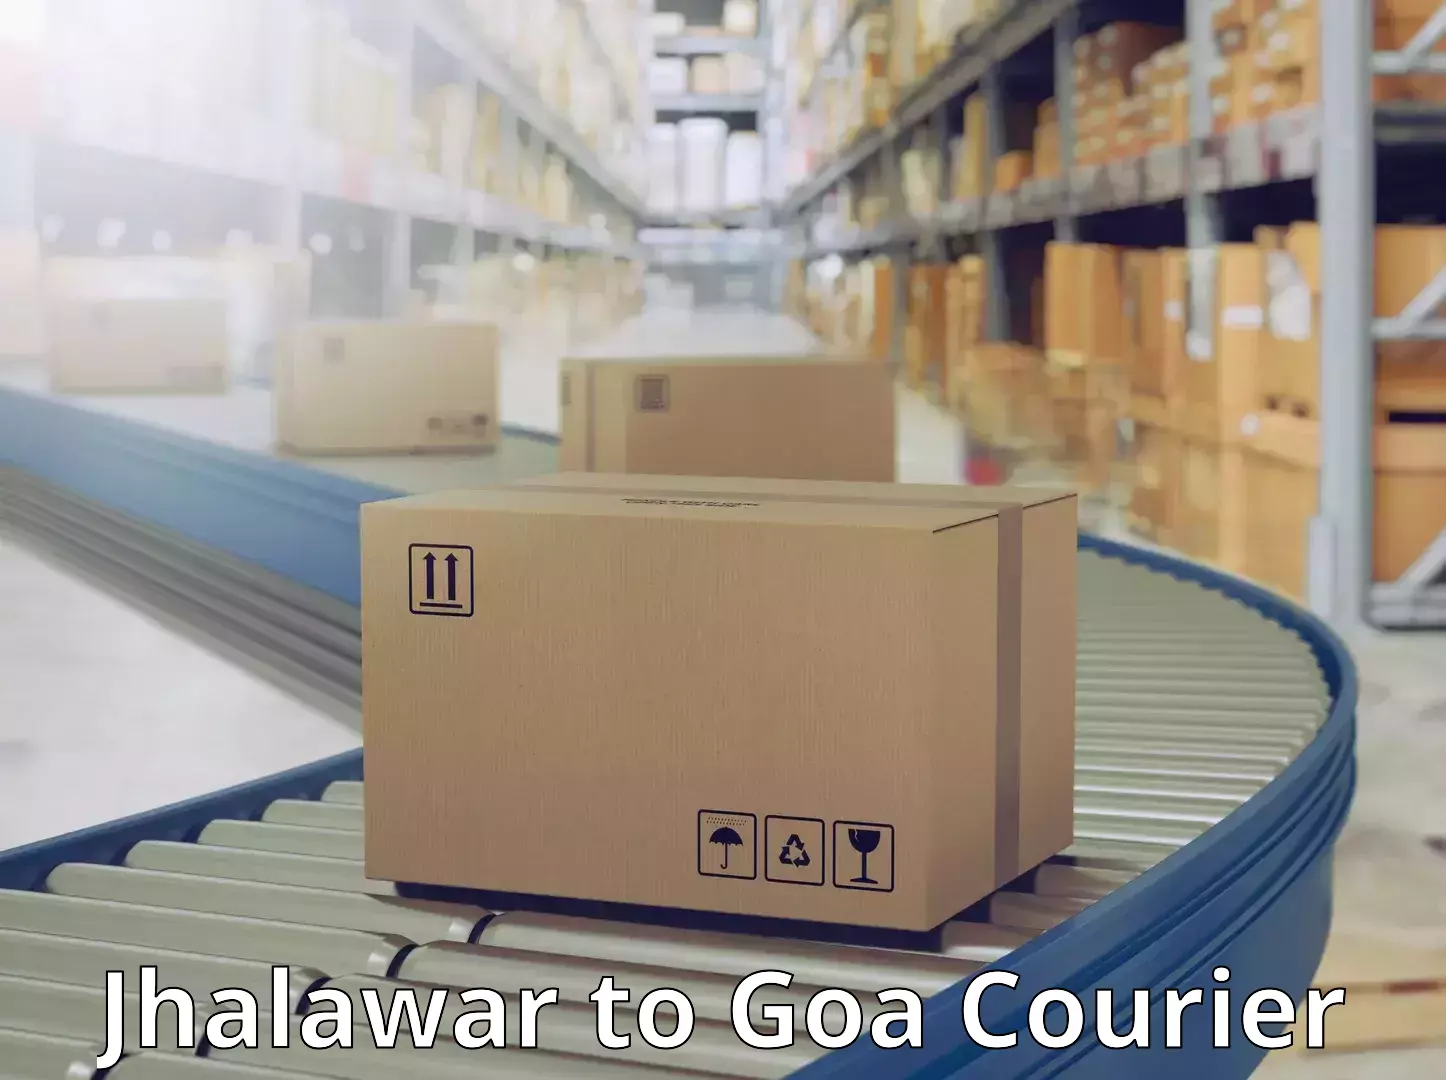 High-capacity shipping options Jhalawar to Canacona